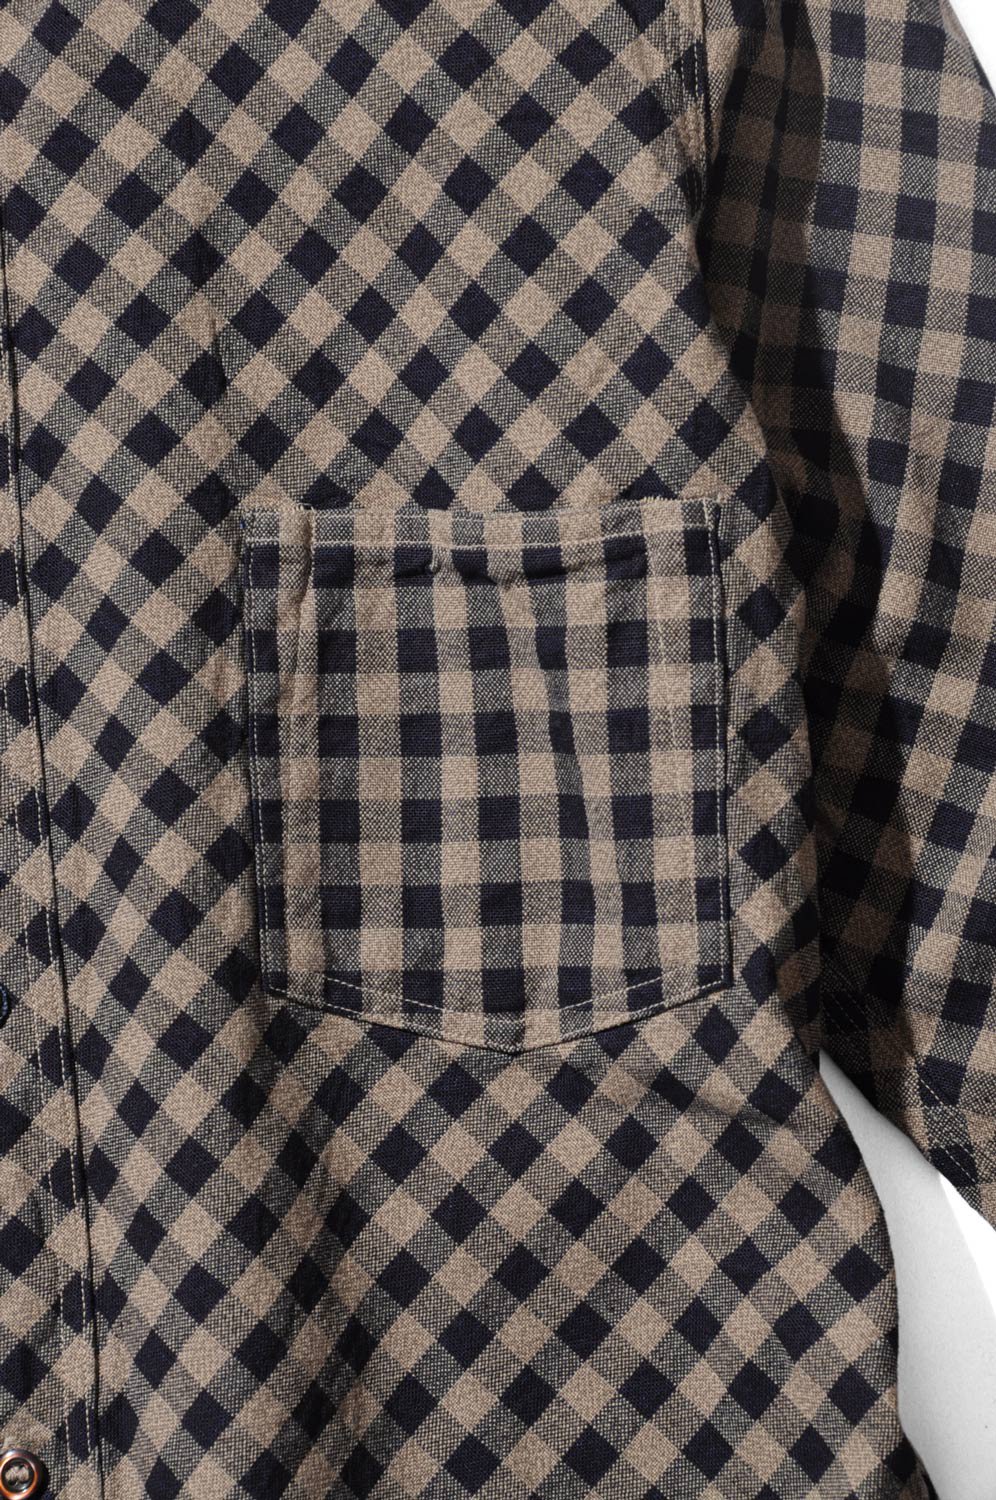 DELUXEWARE(デラックスウエア) チェックシャツ GREMEN & VILL.EIGHT KUOTA 通販正規取扱 | ハーレムストア